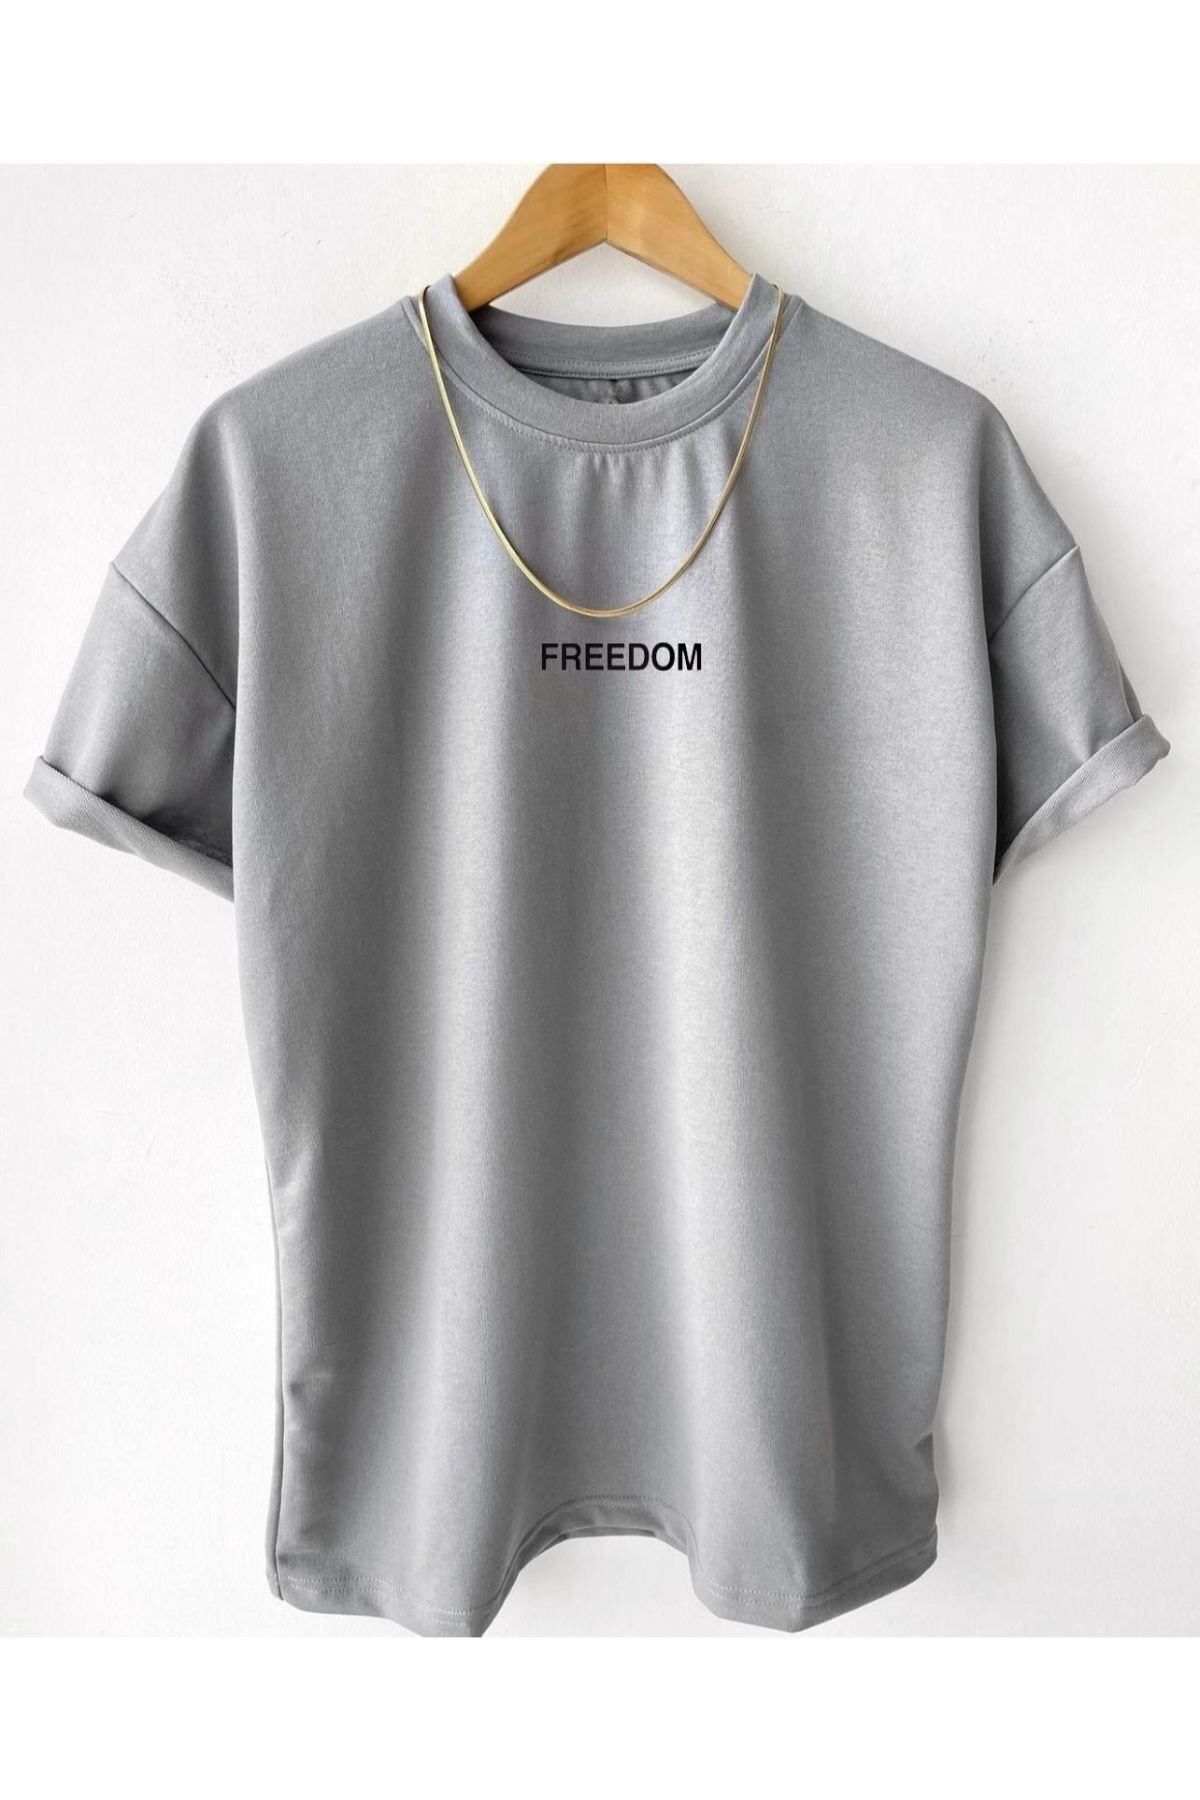 FANBOX SHOP Erkek Gri Freedom Baskılı Oversize Bisiklet Yaka Kısa Kollu T-shirt